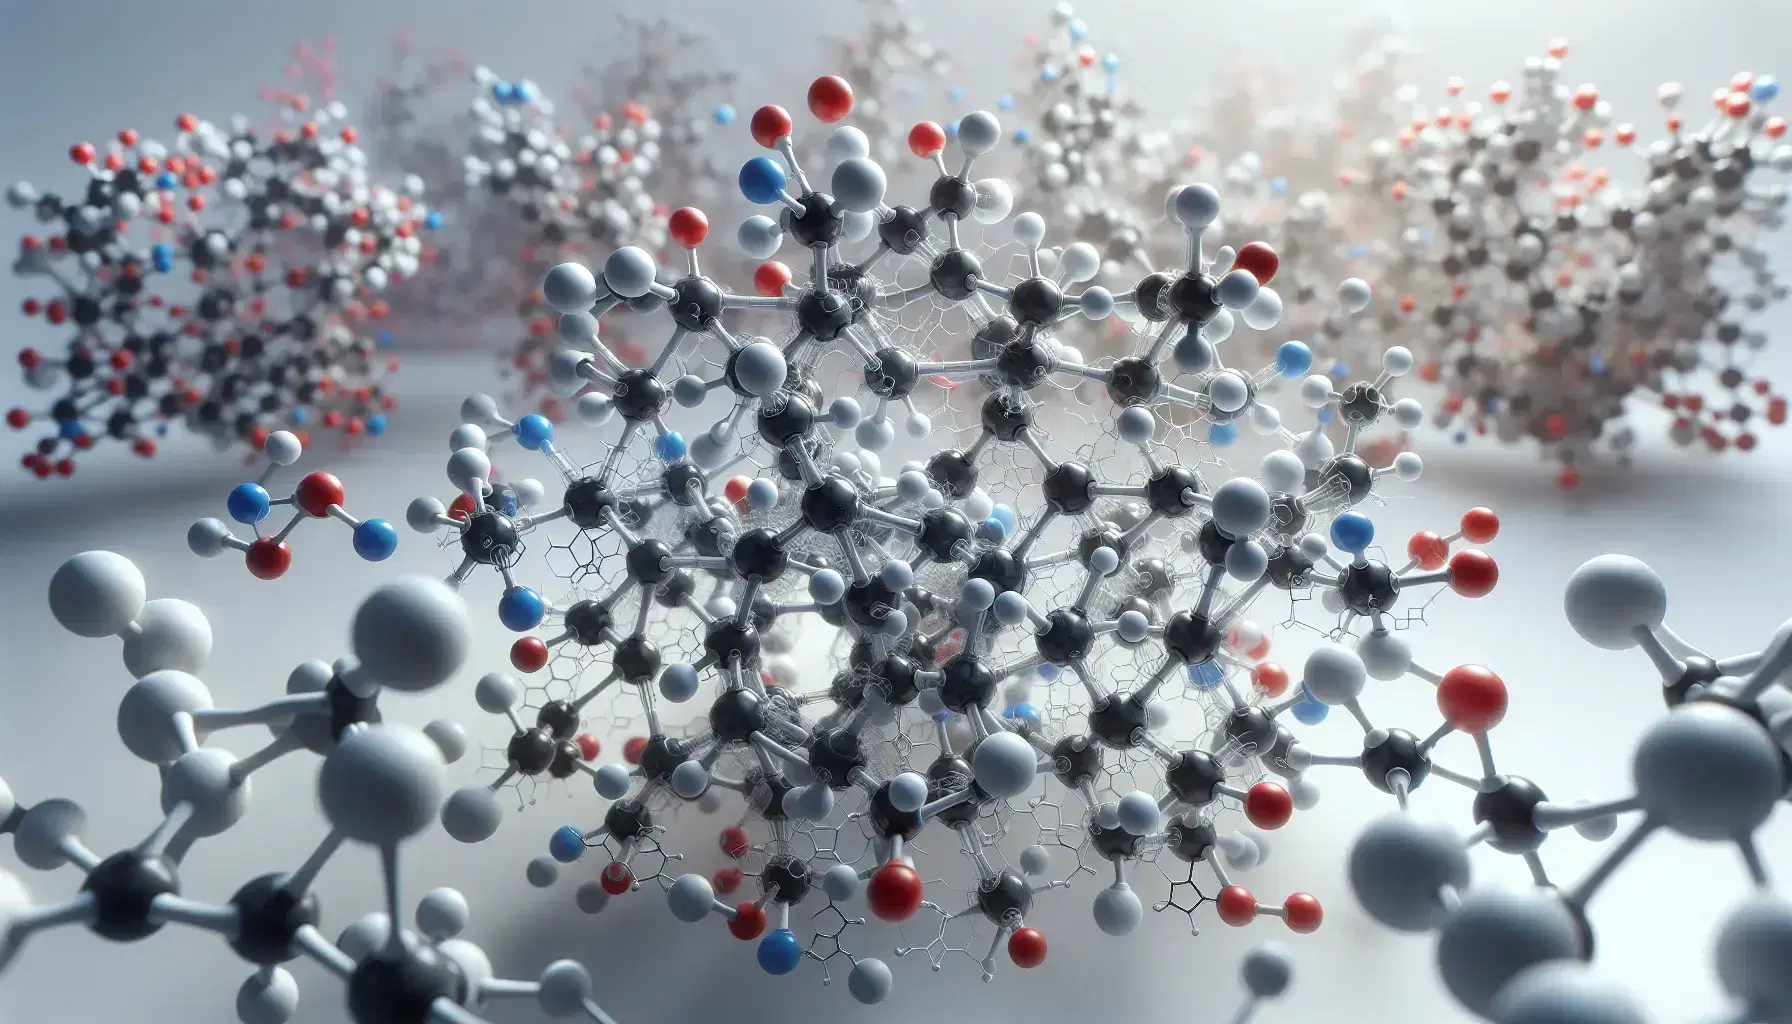 Modelo tridimensional detallado de molécula compleja con átomos en colores rojo, blanco, azul y negro, representando diferentes elementos químicos.